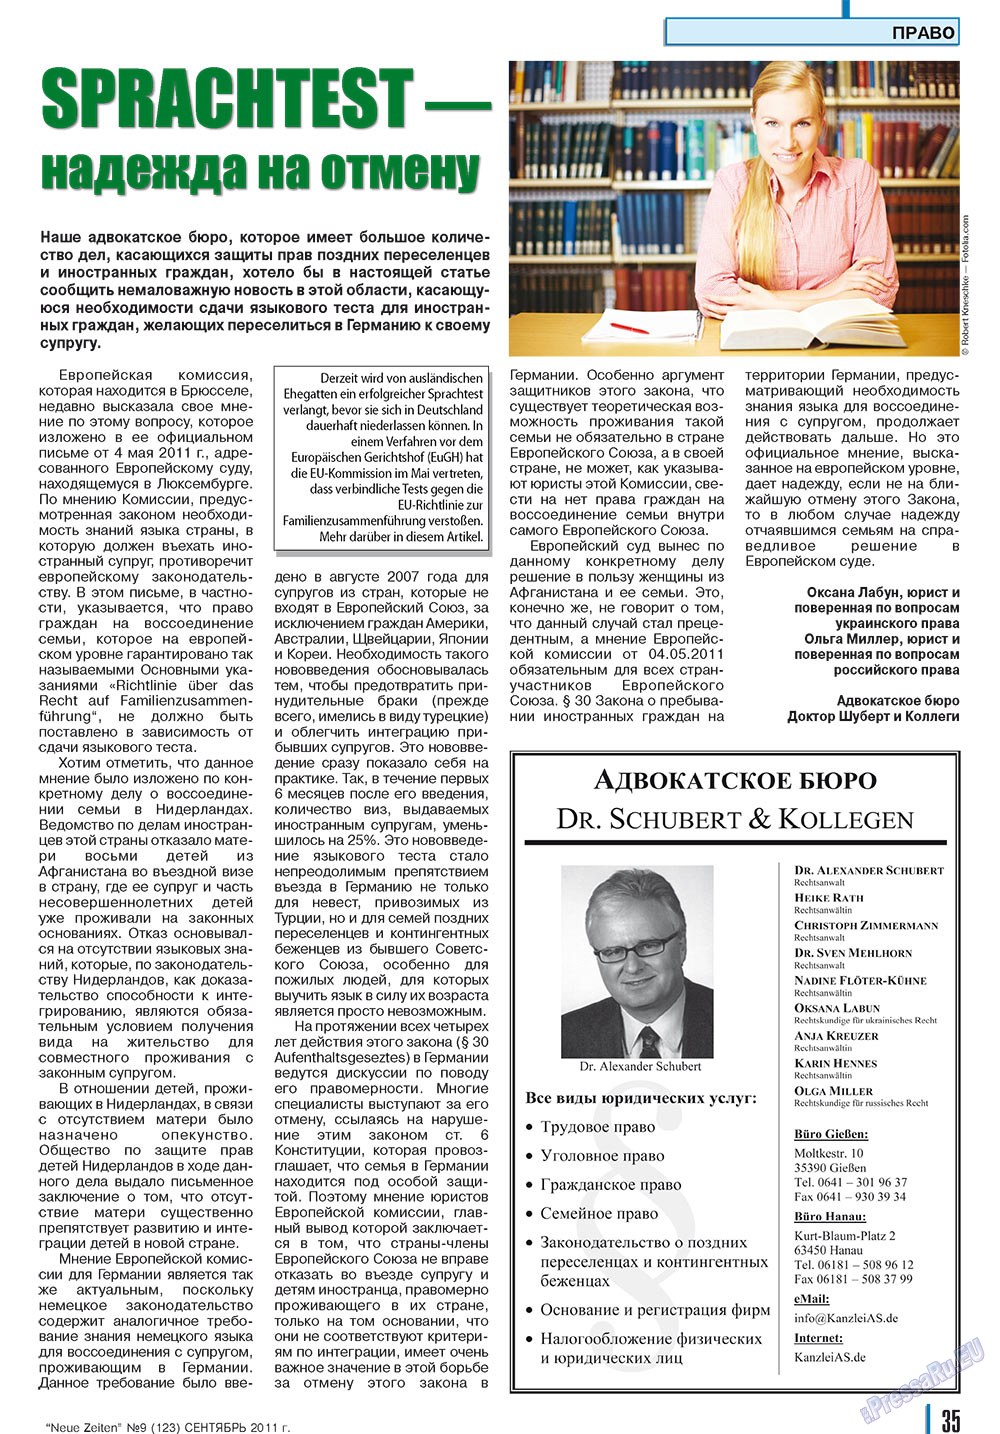 Neue Zeiten, журнал. 2011 №9 стр.35